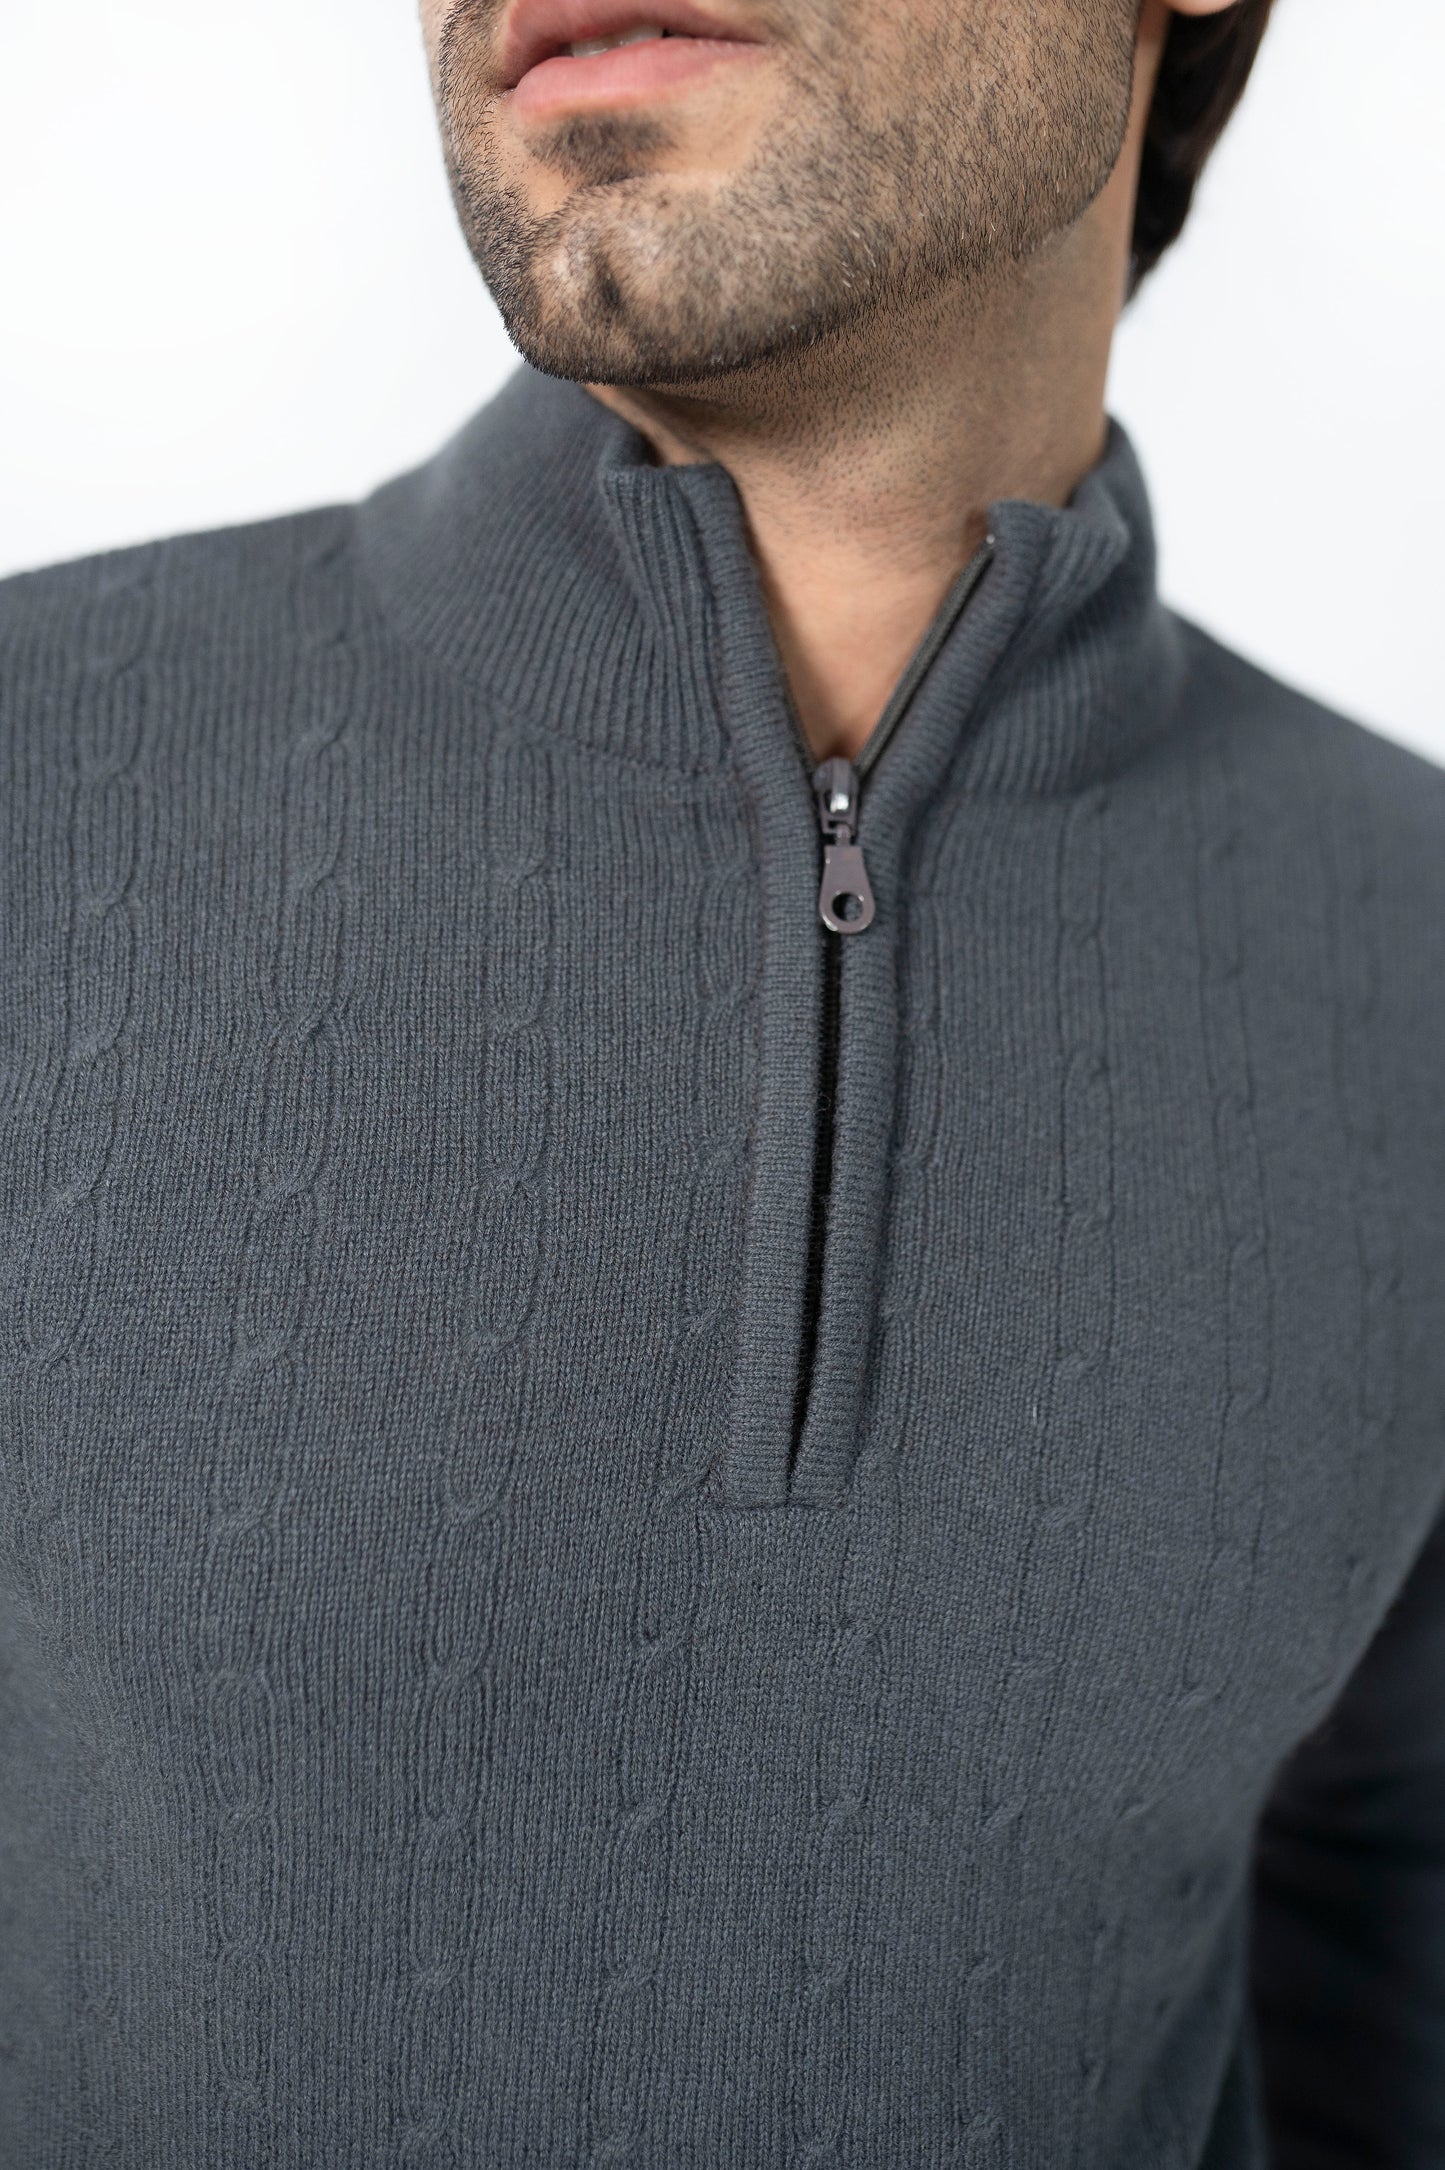 100% Lambs Wool Sweater in Charcoal